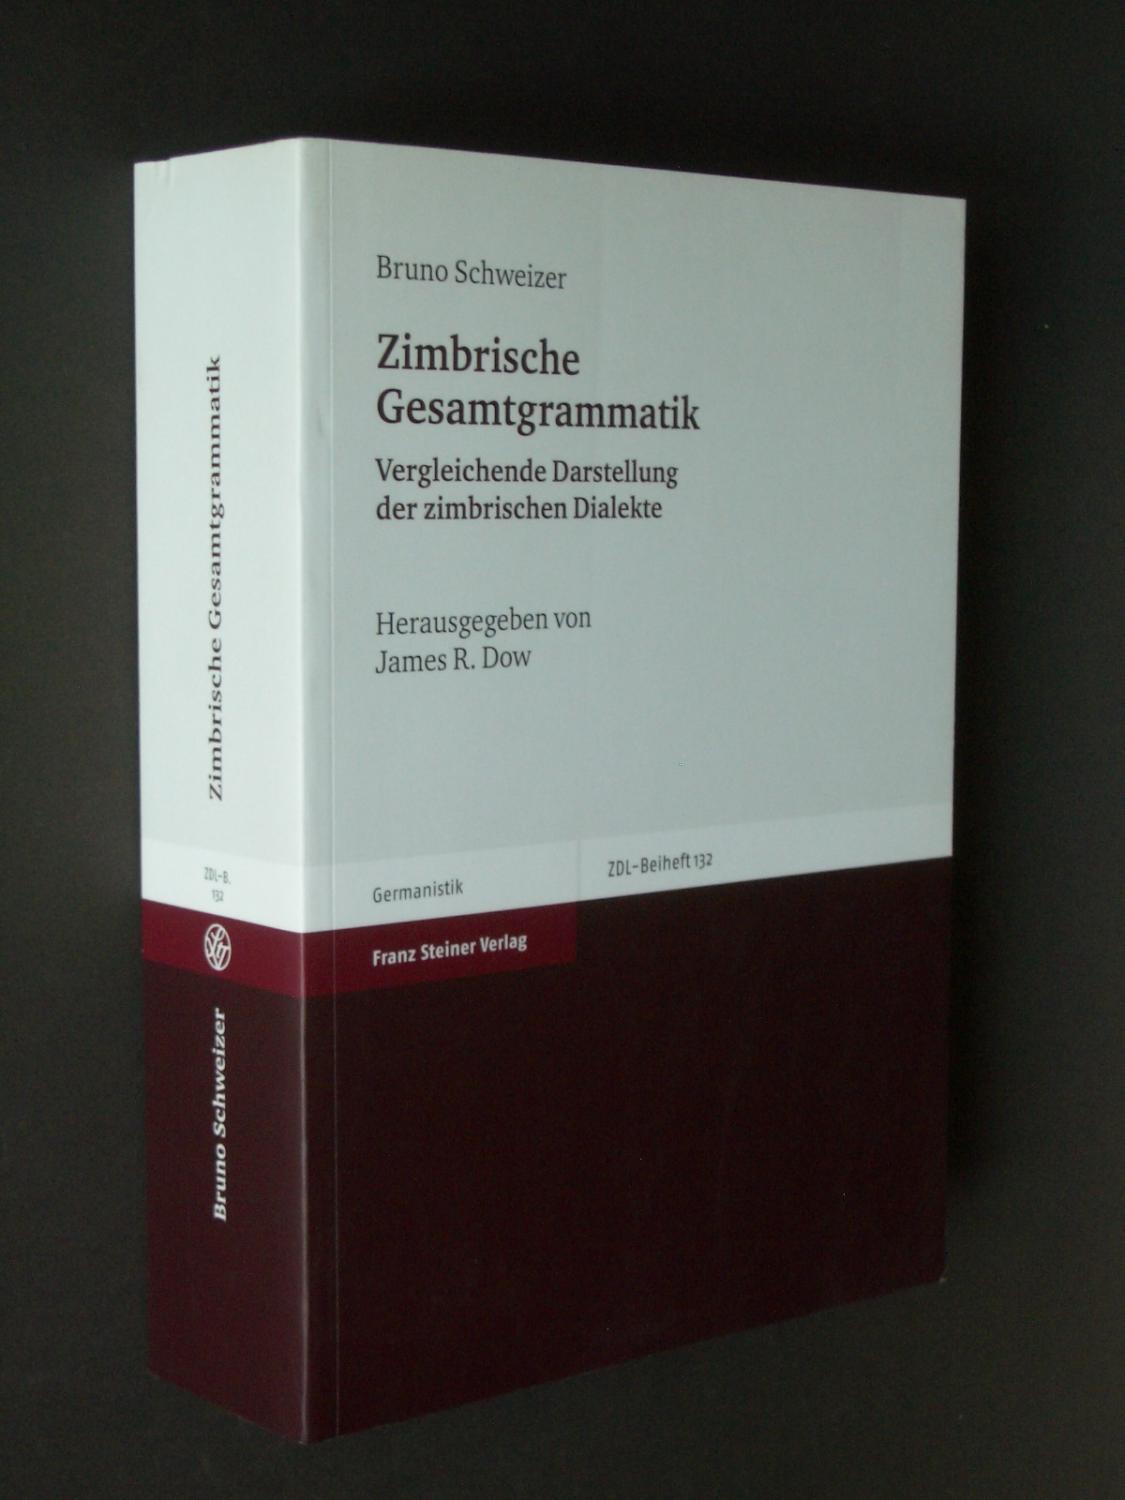 Zimbrische Gesamtgrammatik: Vergleichende Darstellung der zimbrischen Dialekte - Schweizer, Bruno; edited by James R. Dow